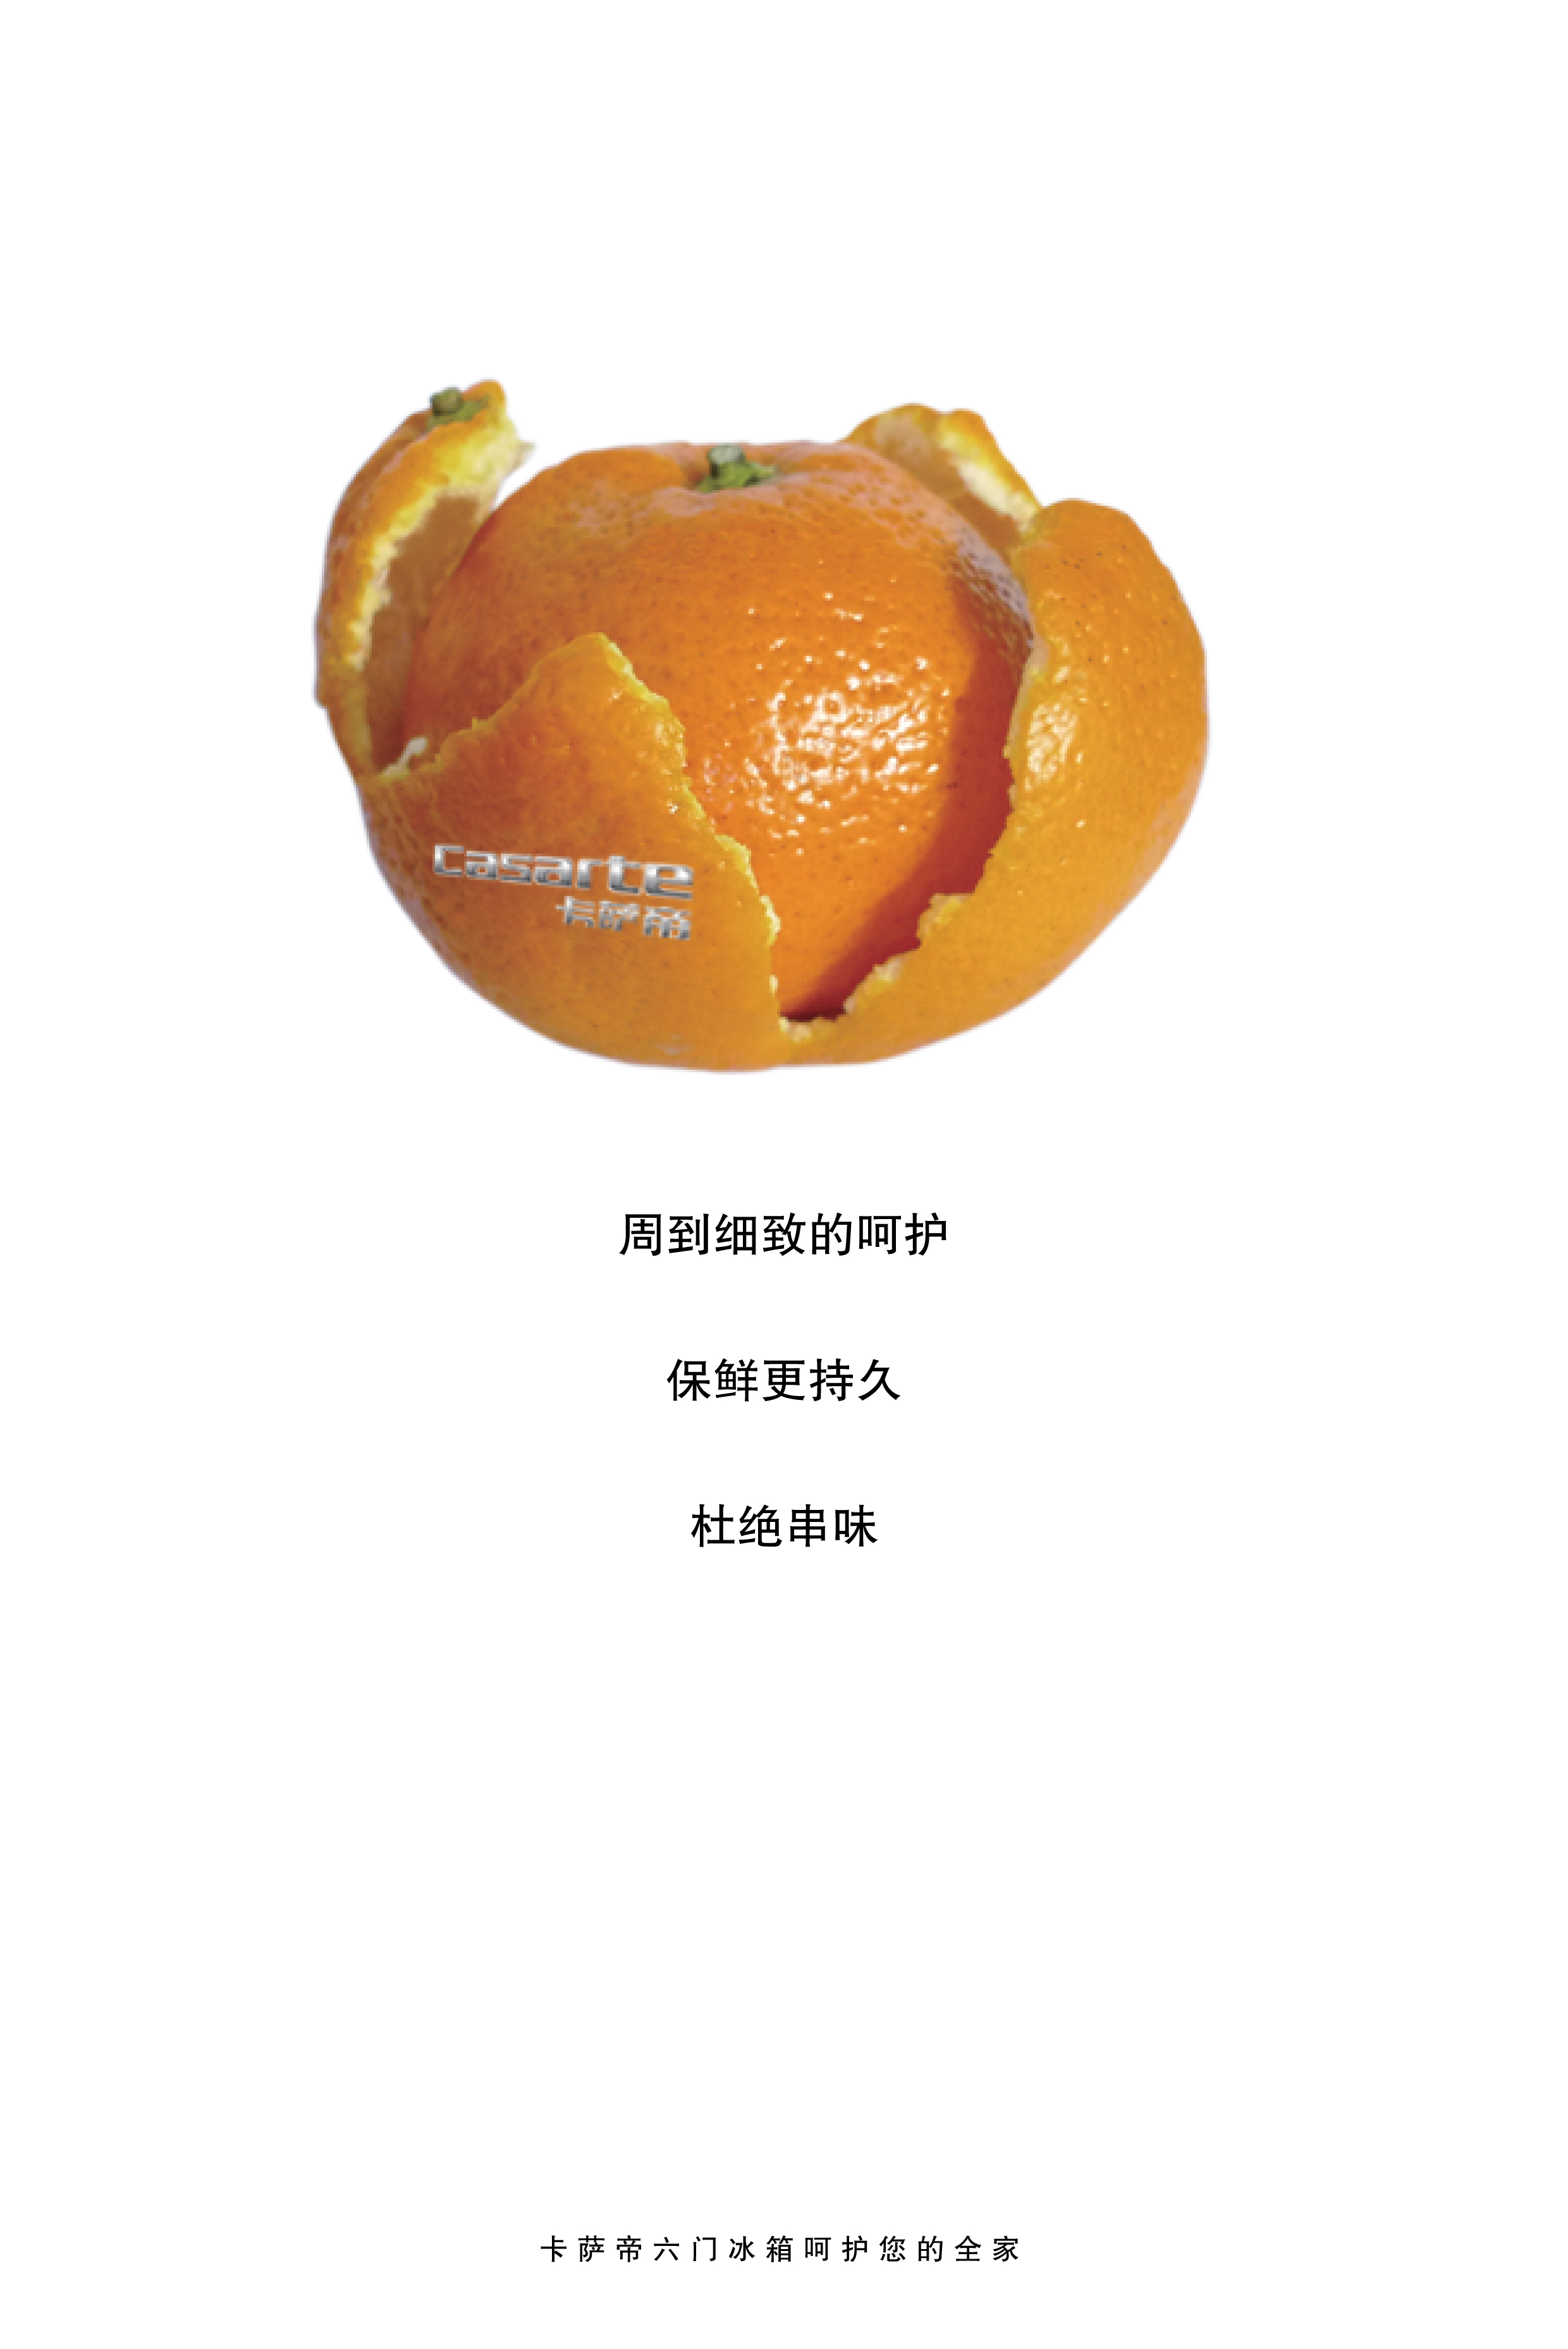 保鲜 橘子 RGB.jpg